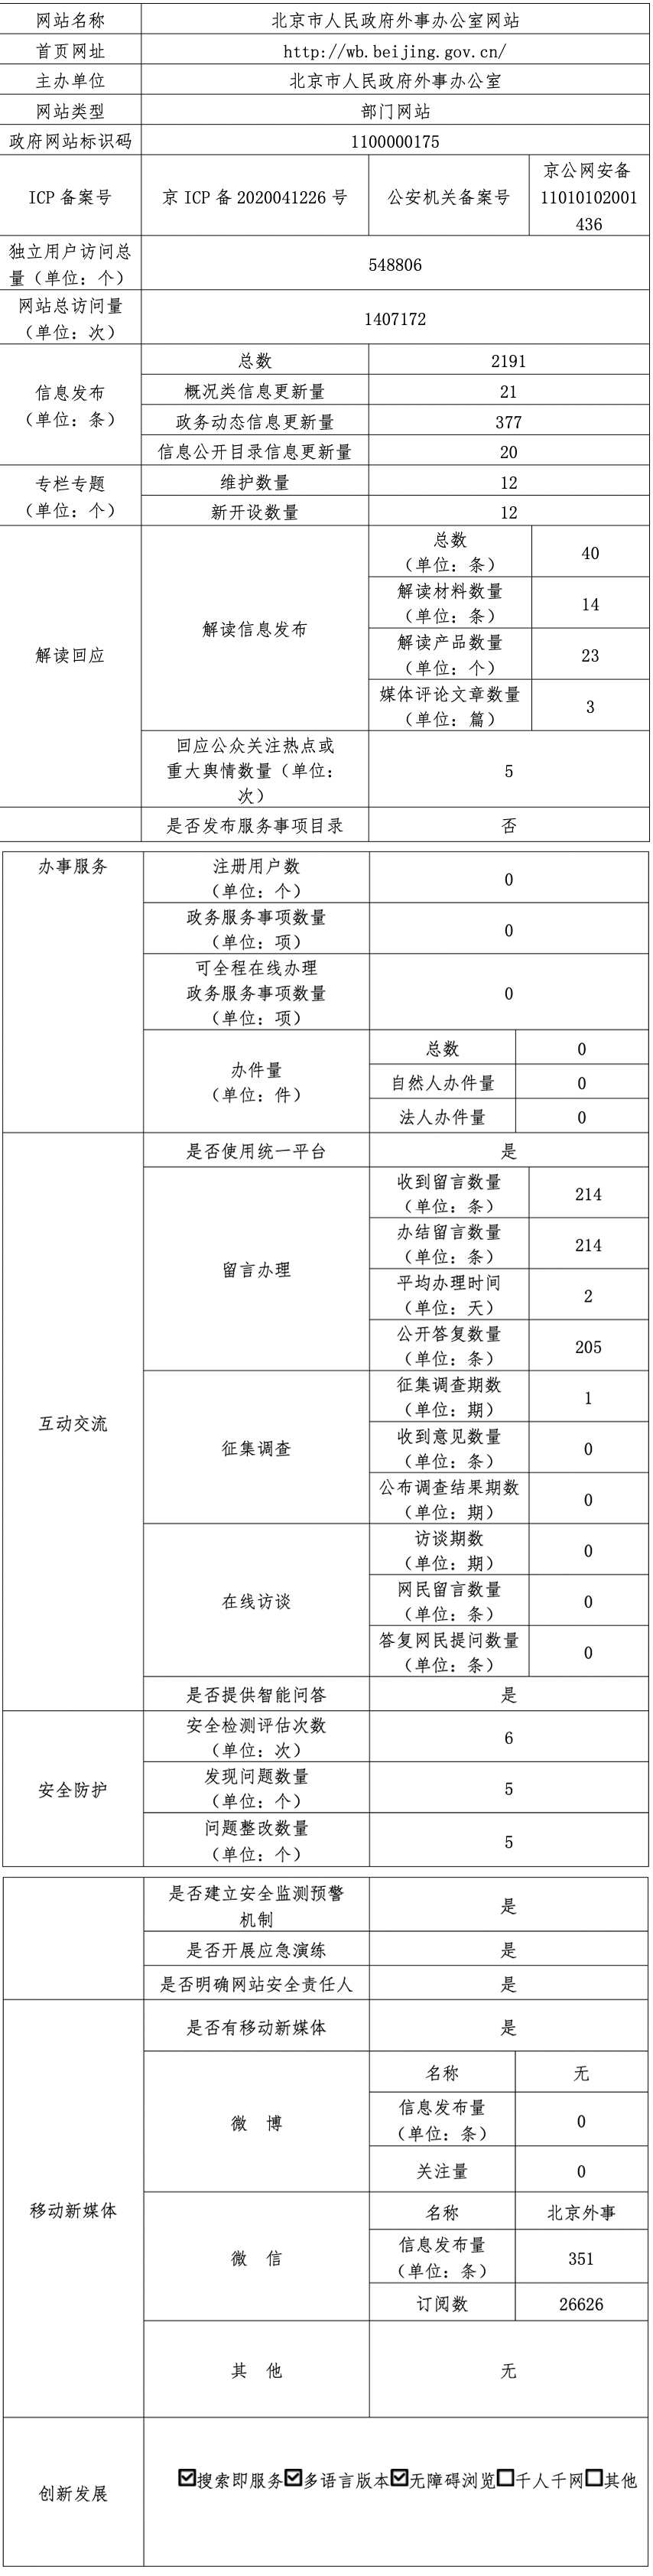 北京市人民政府外事办公室2021年政府网站年度工作报表